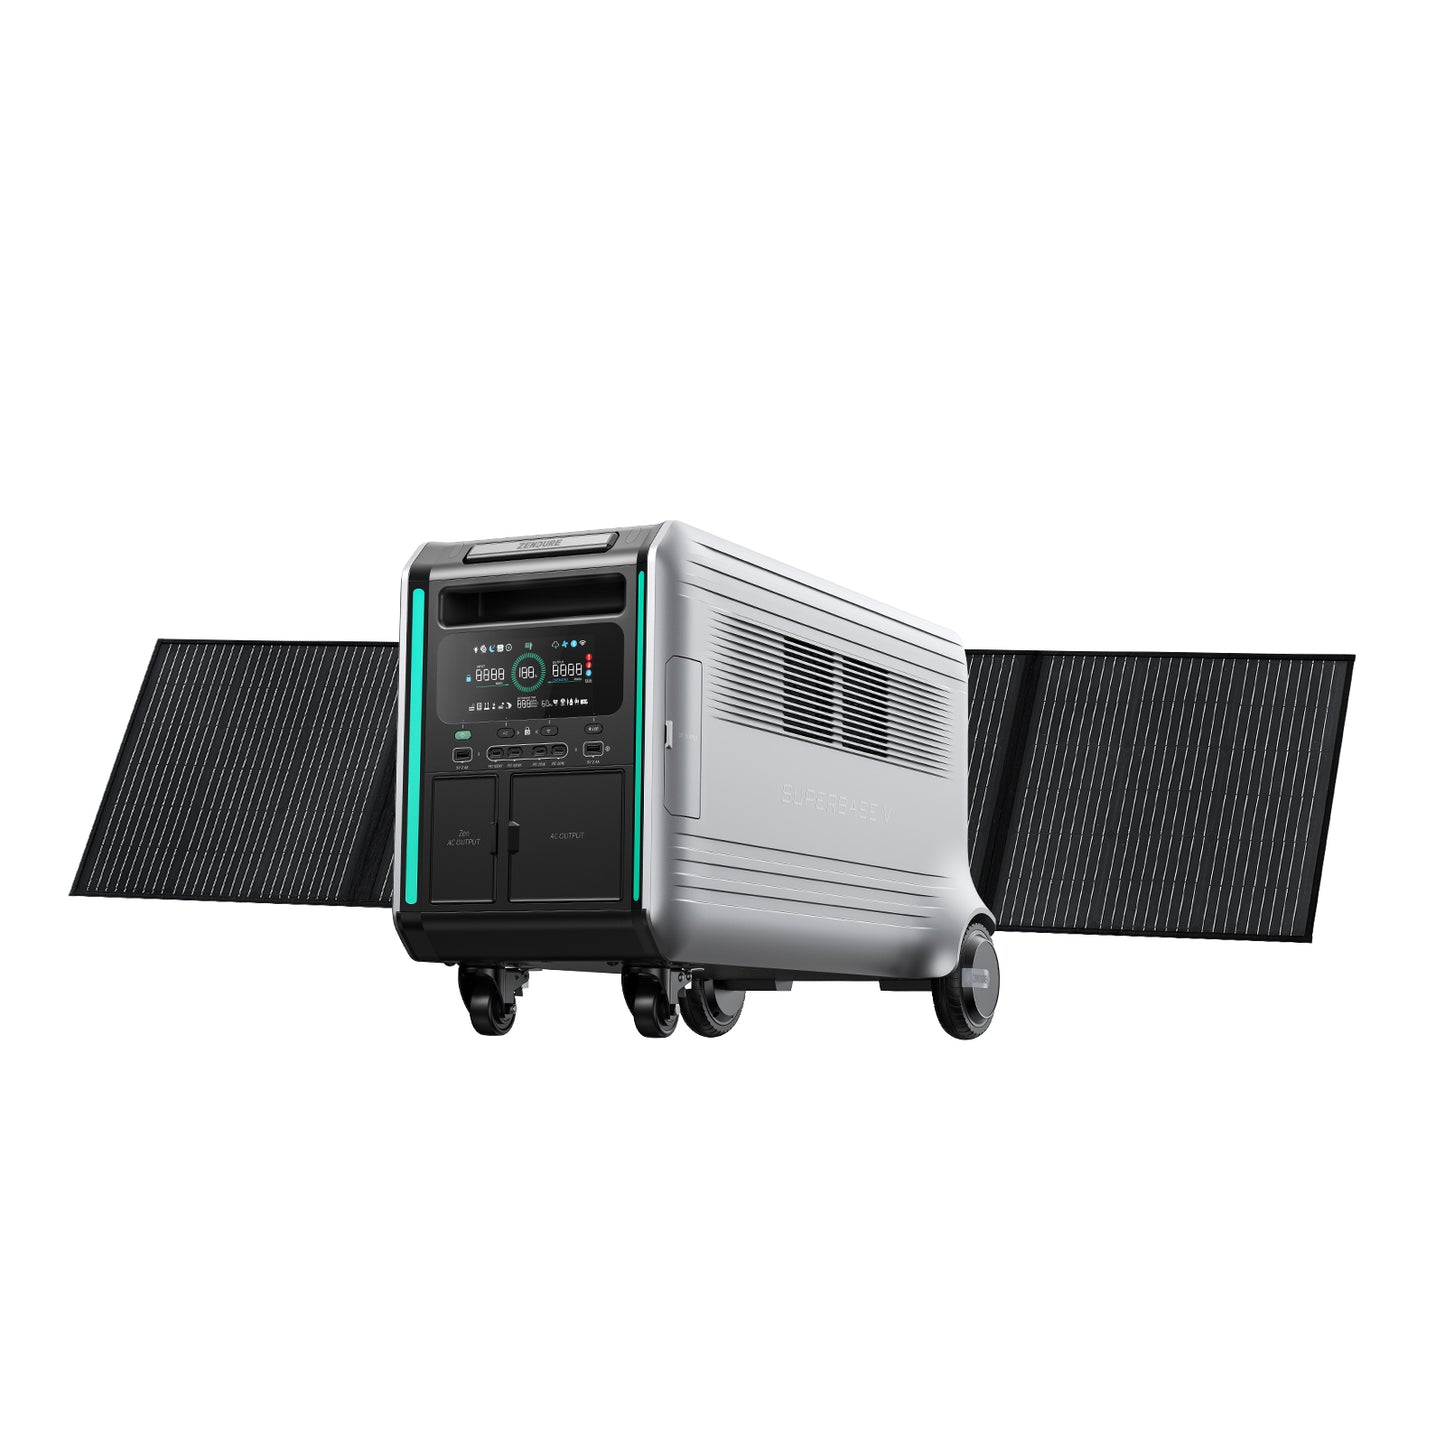 ZENDURE SuperBase V6400 + 200W Solar Panel